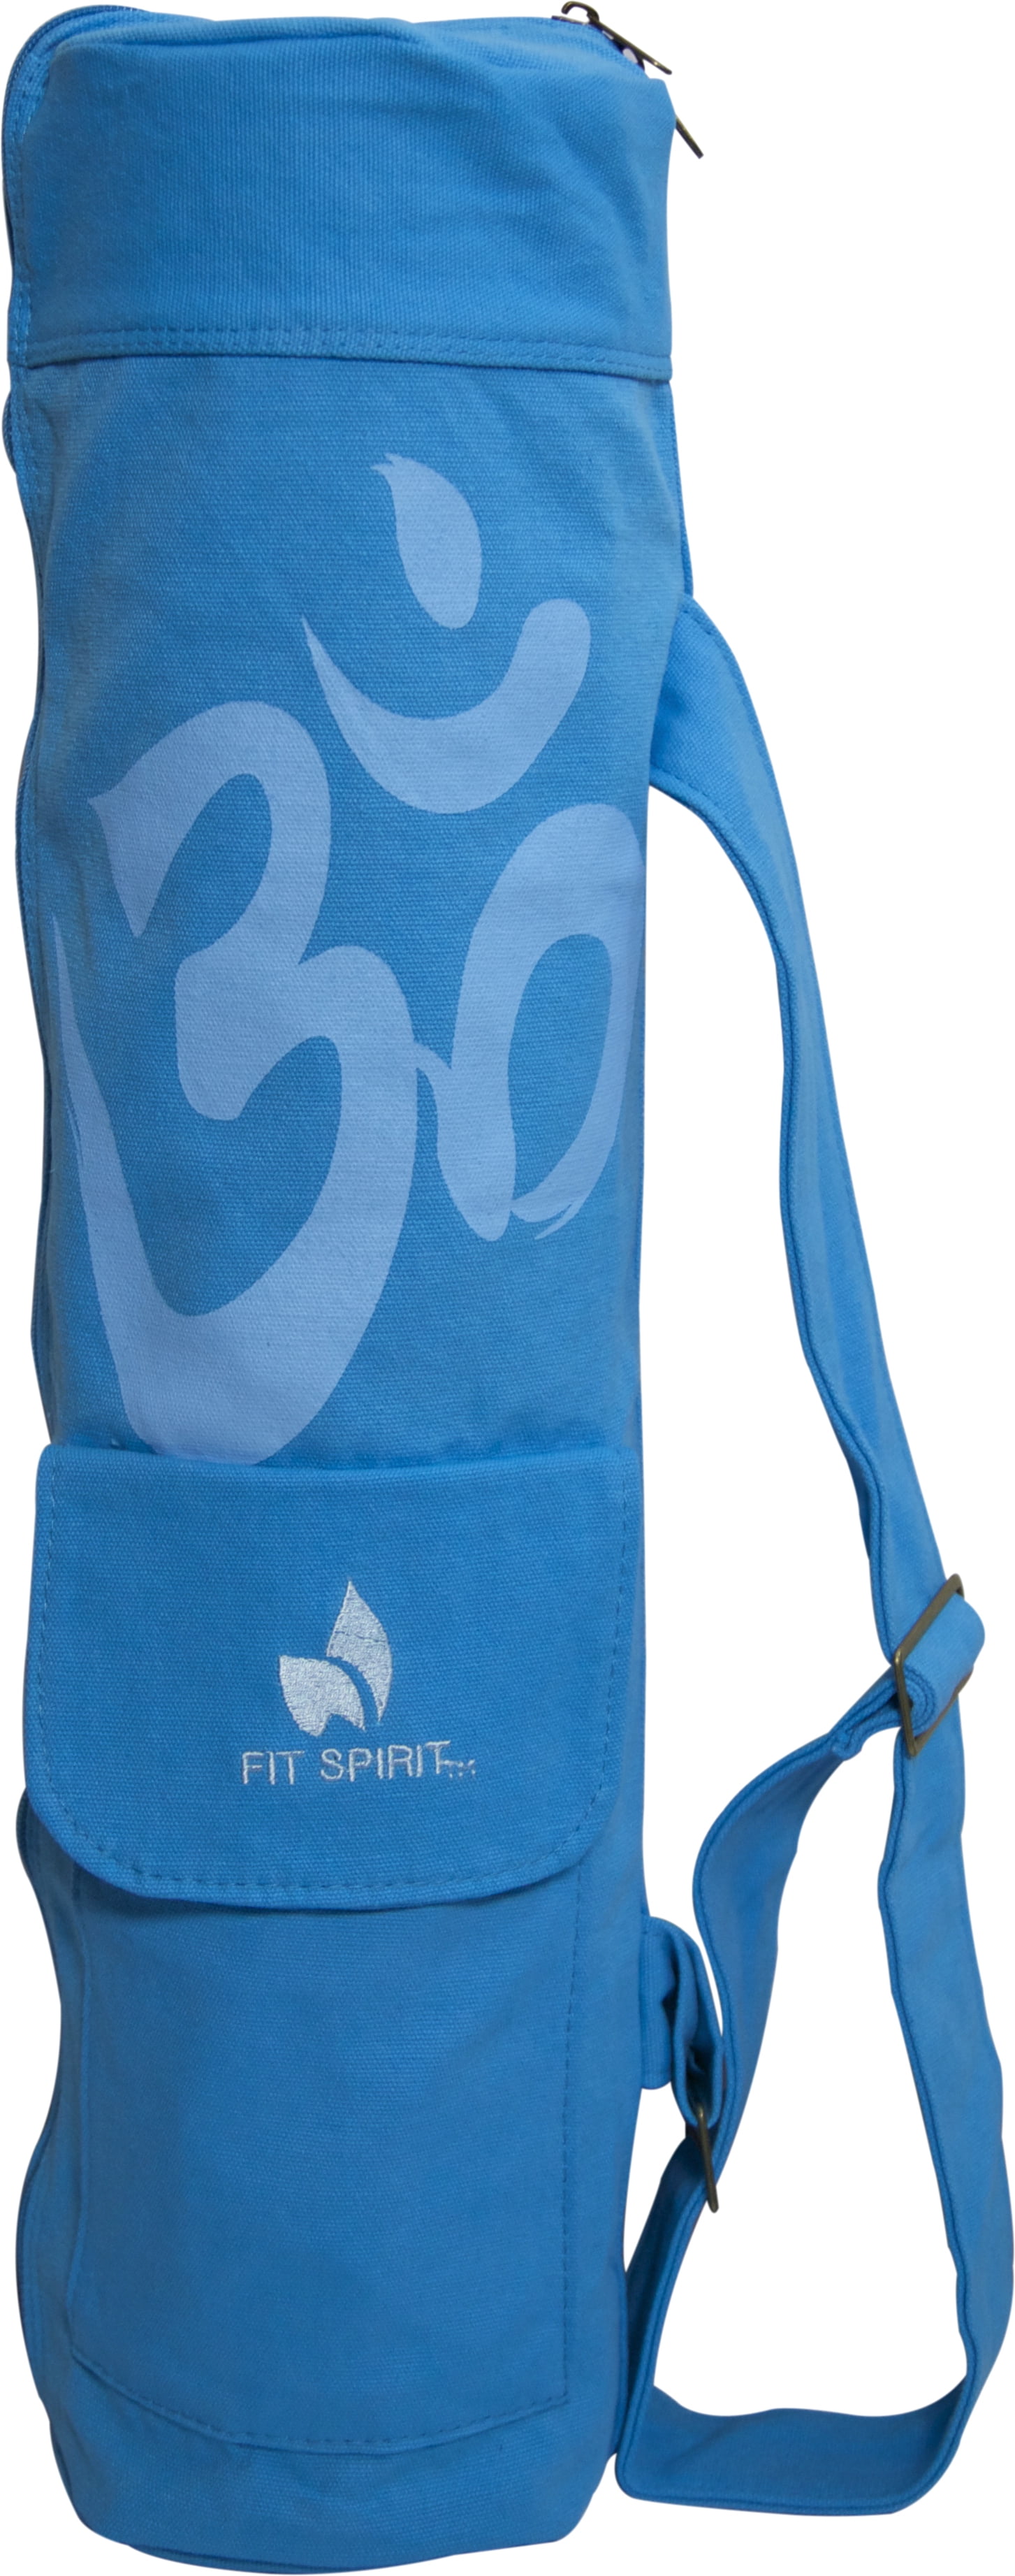 Fit Spirit® OM Exercise Yoga Mat Bag w/ 2 Cargo Pockets – Blue ...